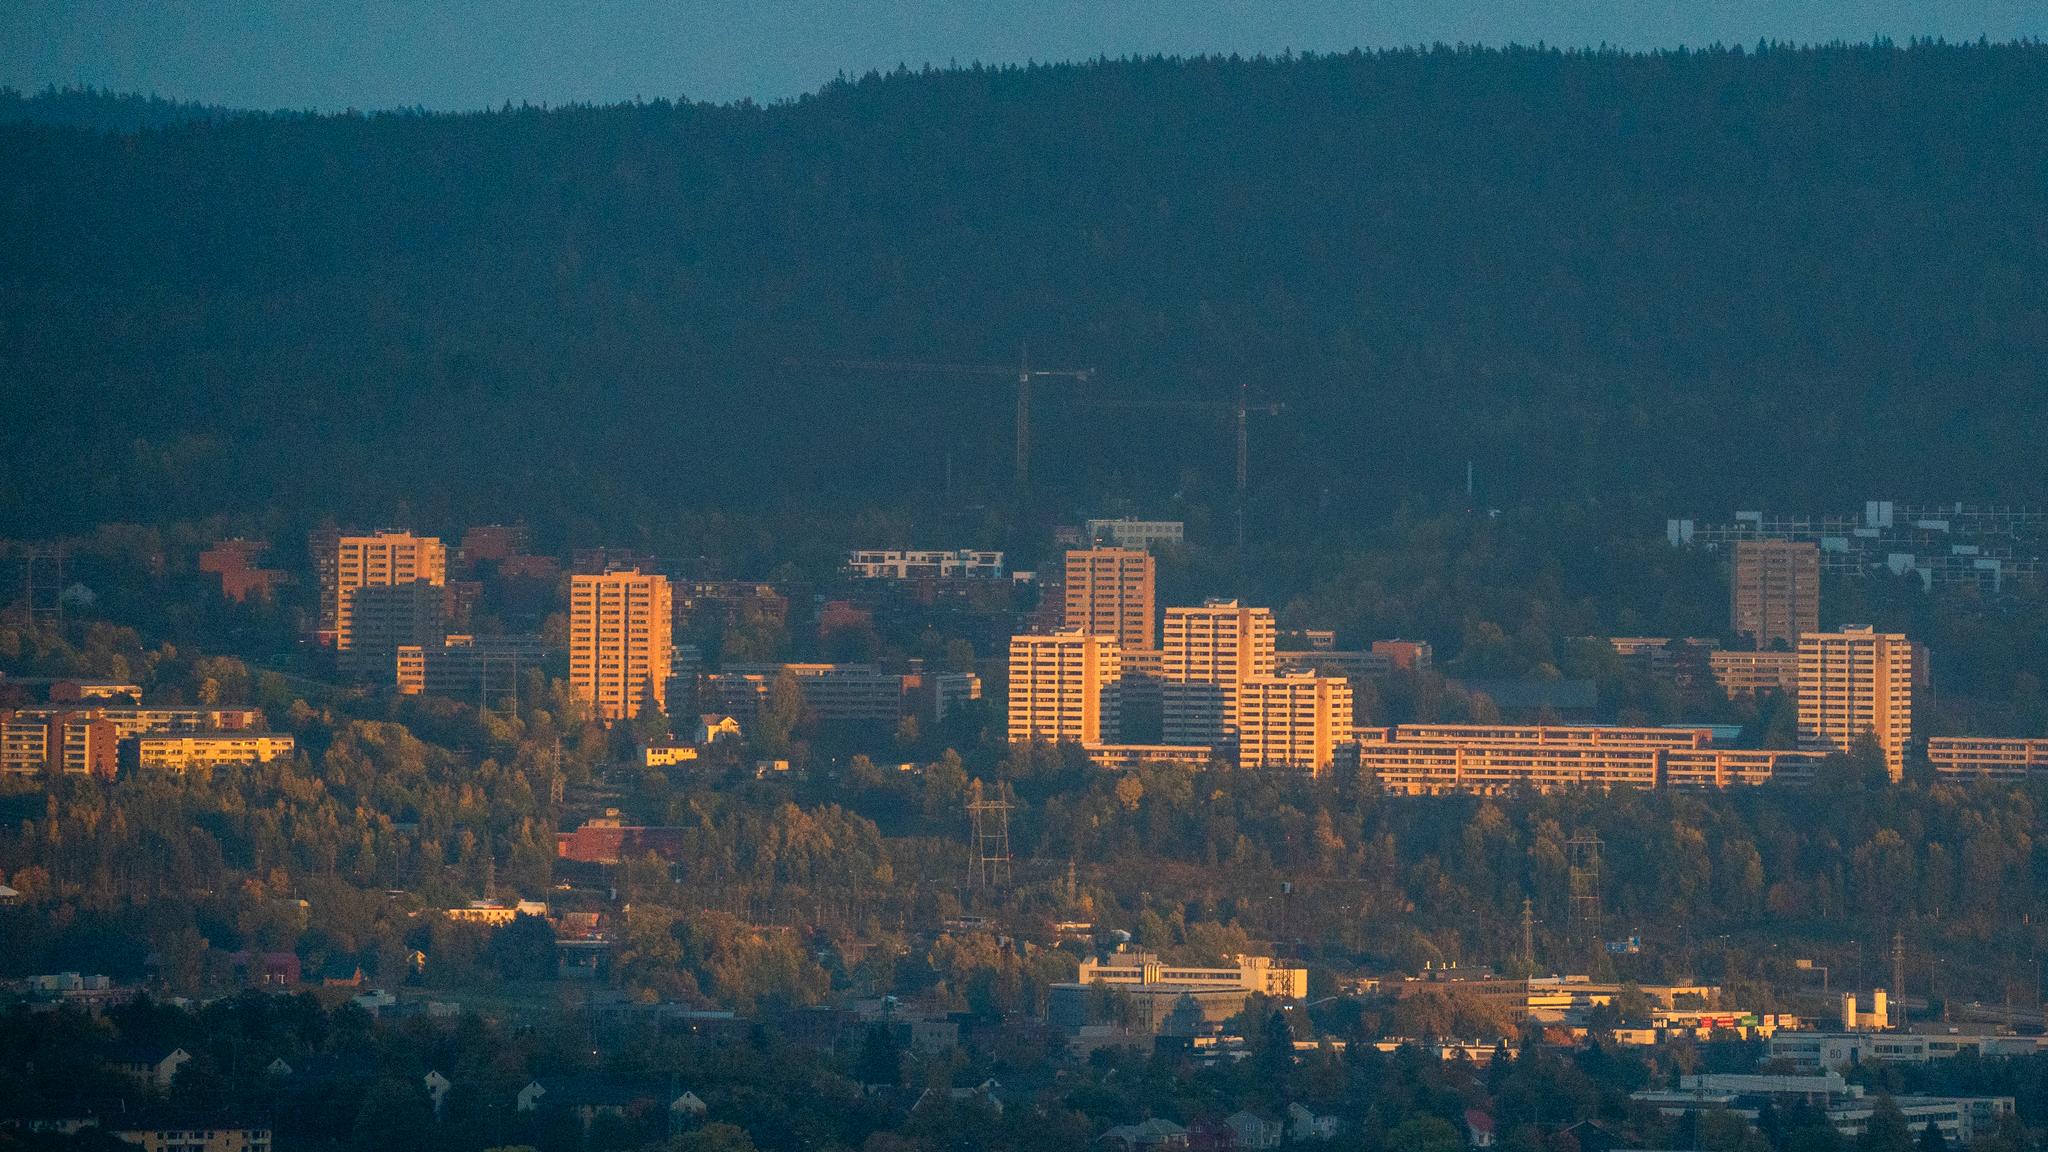 Oslo-rektor på sykehus etter å ha blitt angrepet av mindreårig gutt